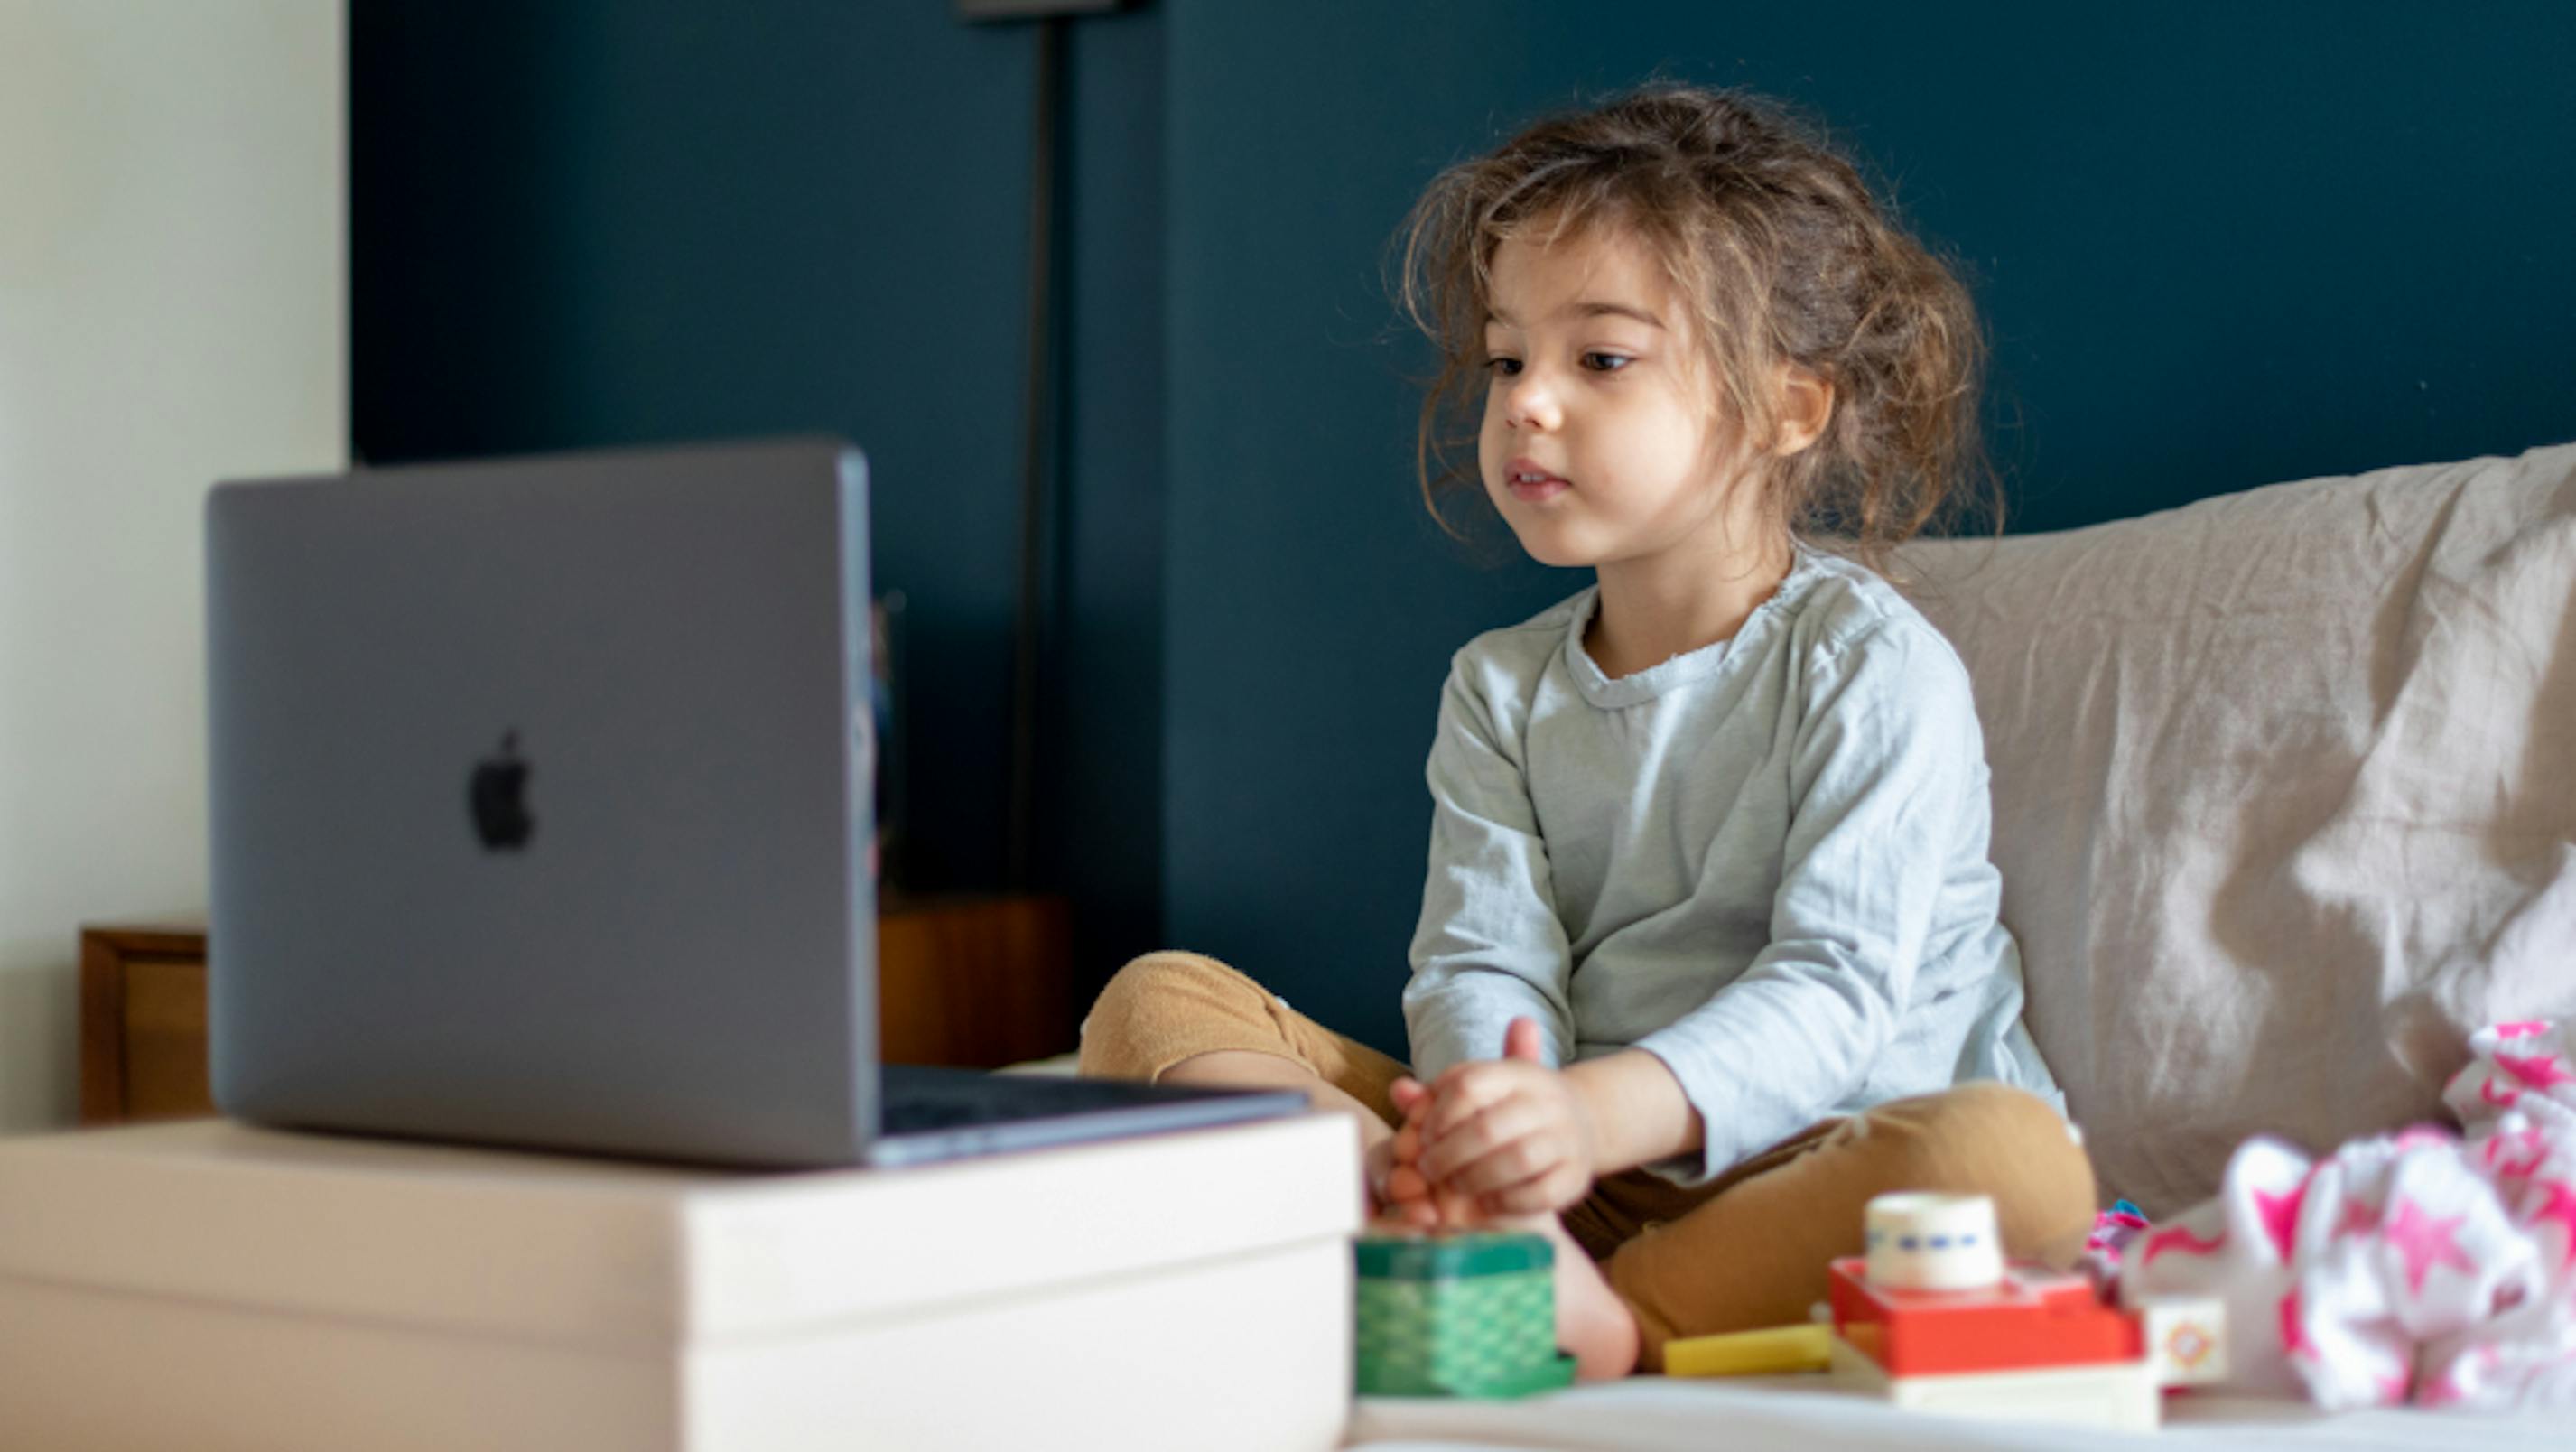 Bambina in videochat davanti al computer